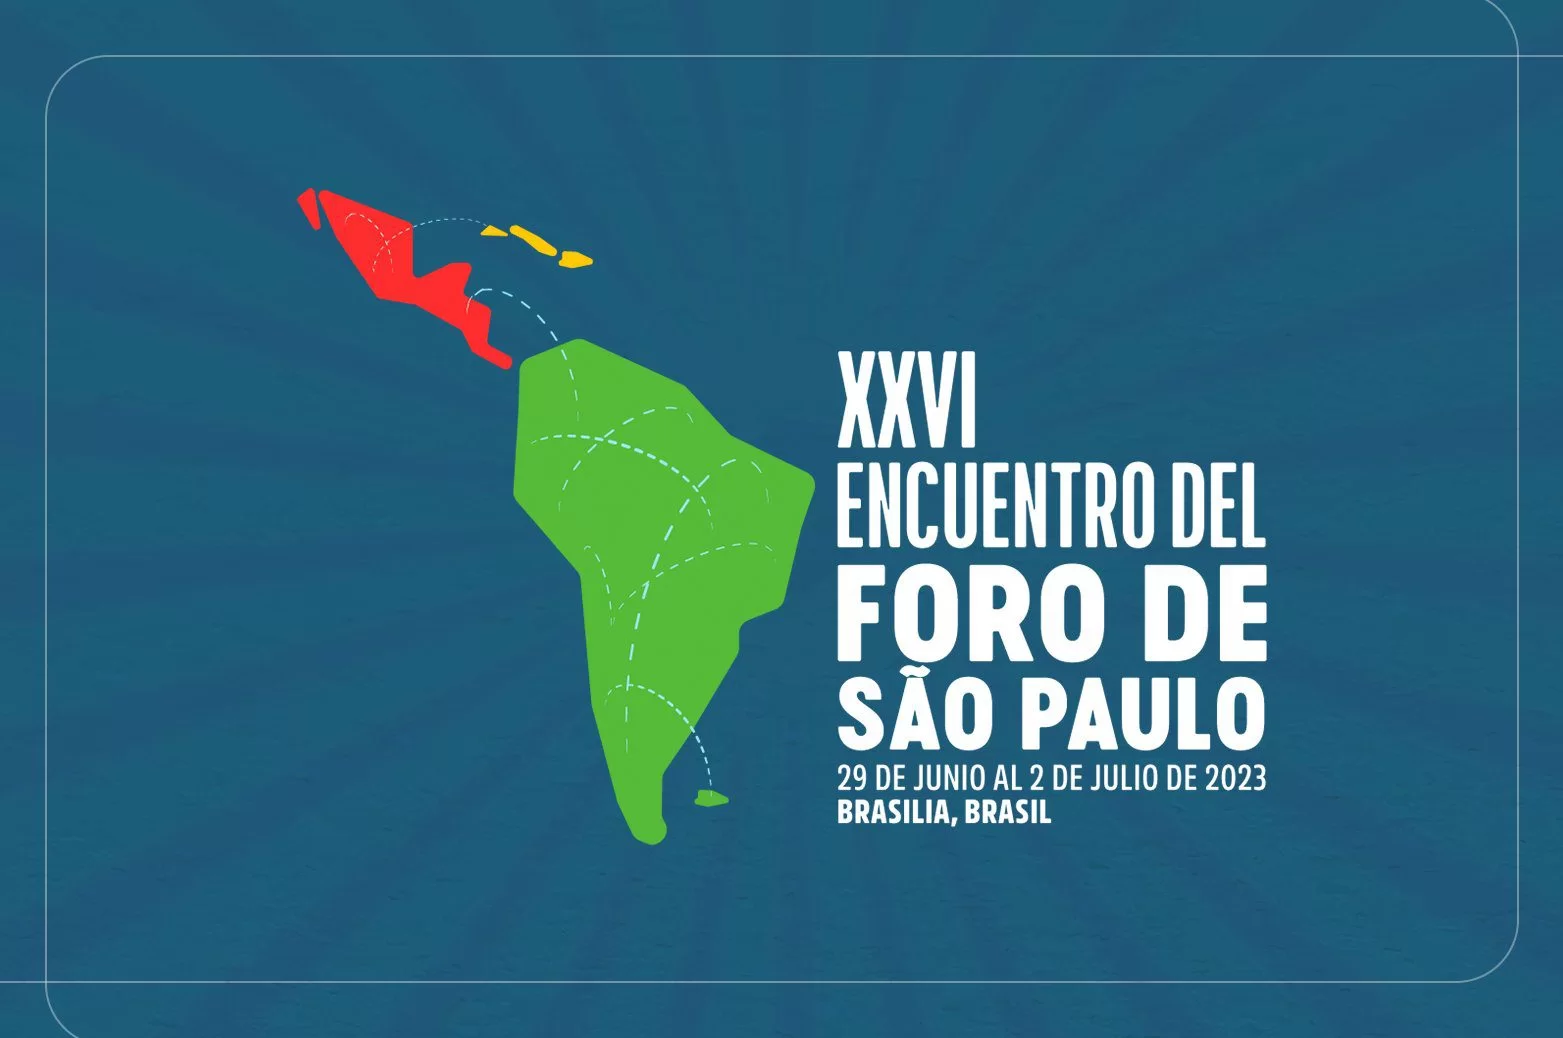 XXVI edición del Foro de São Paulo se realiza en Brasilia